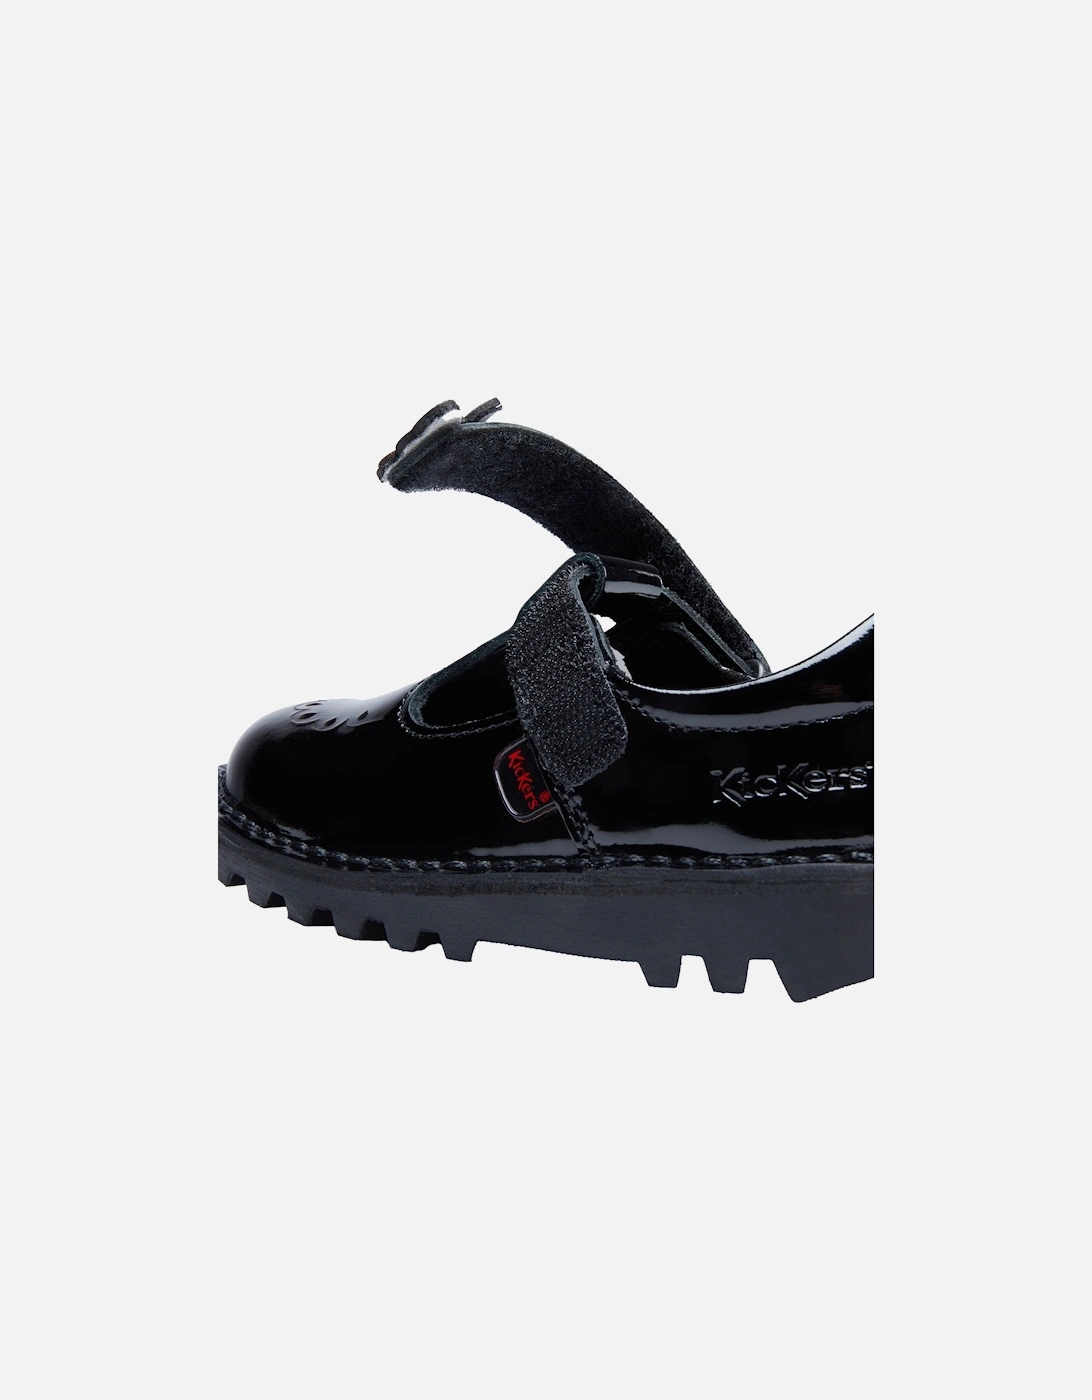 Infants Kick T-Bloom Patent Shoes (Black)